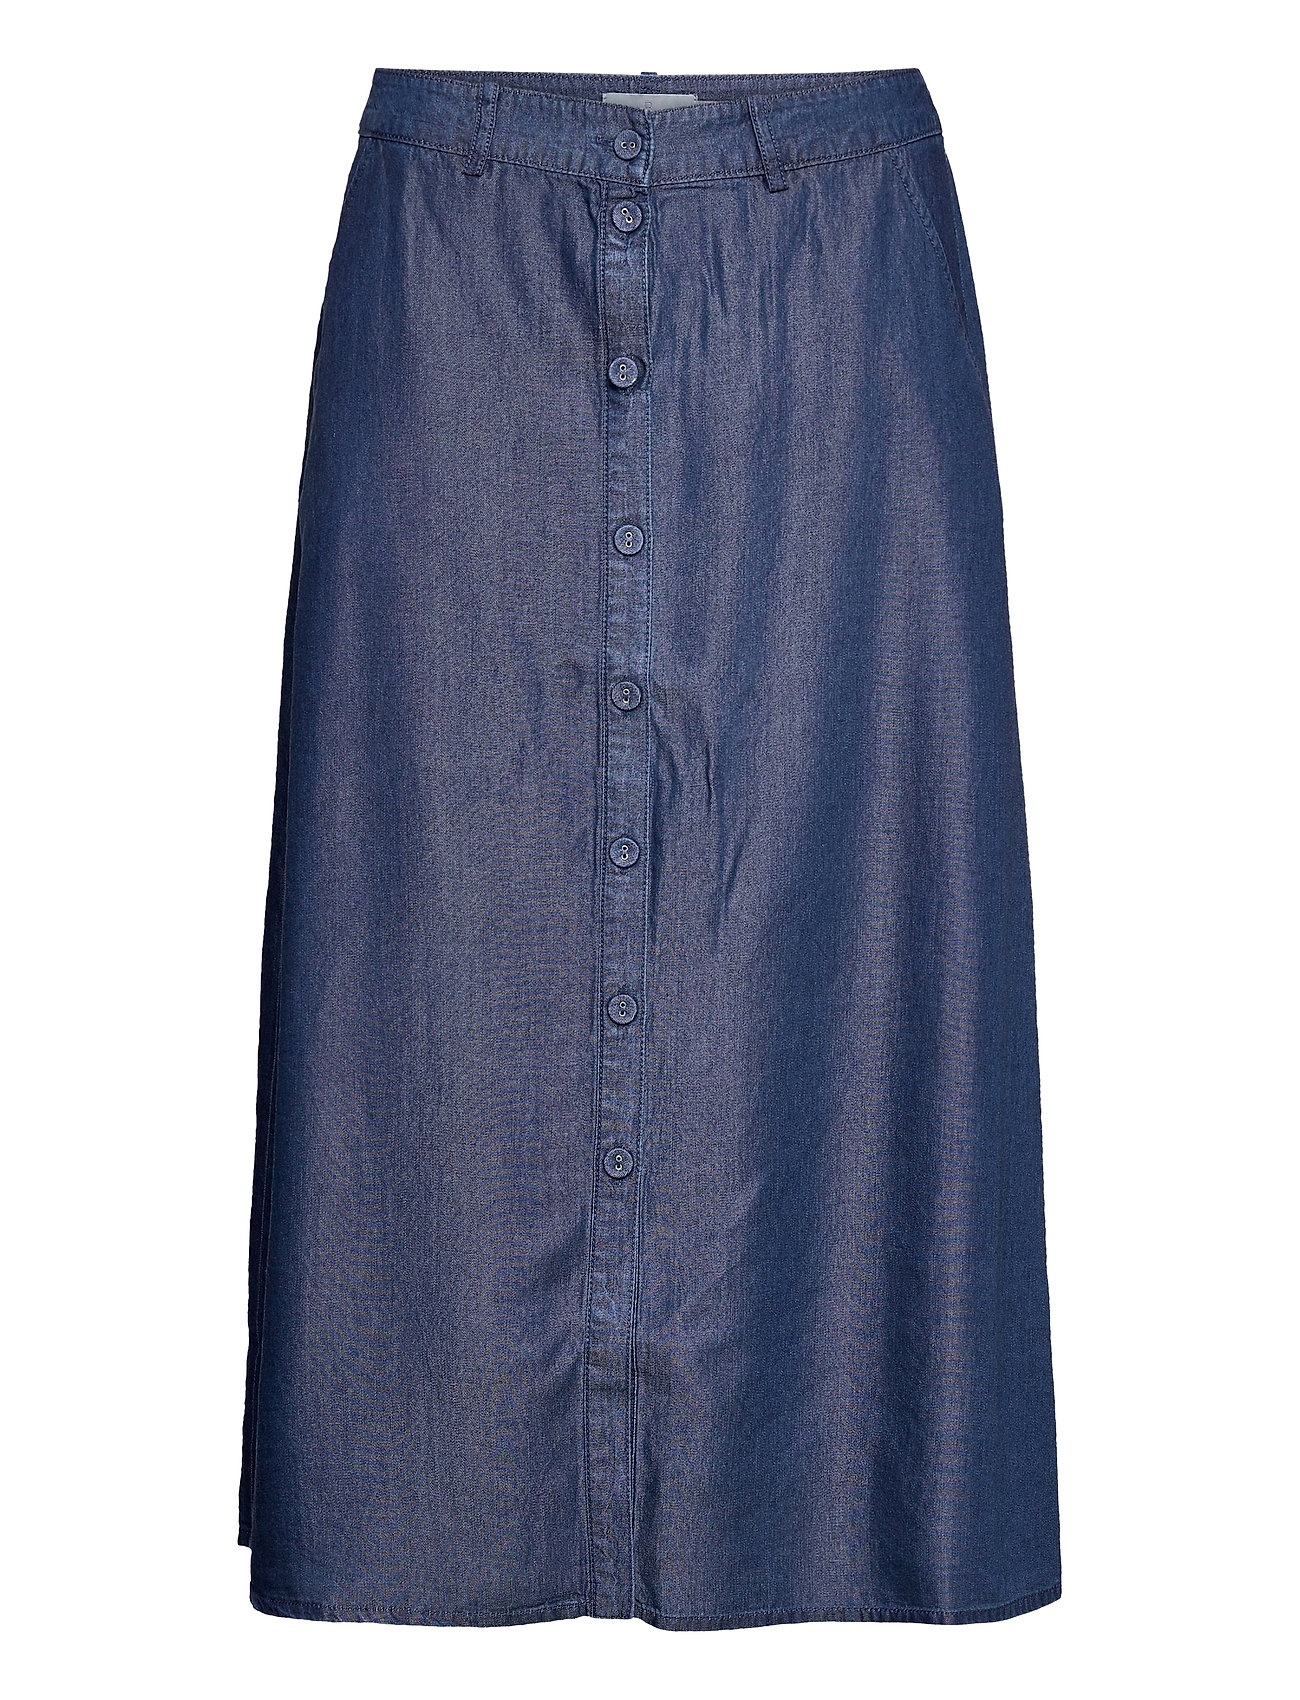 Skirt-Light Woven Polvipituinen Hame Sininen Brandtex